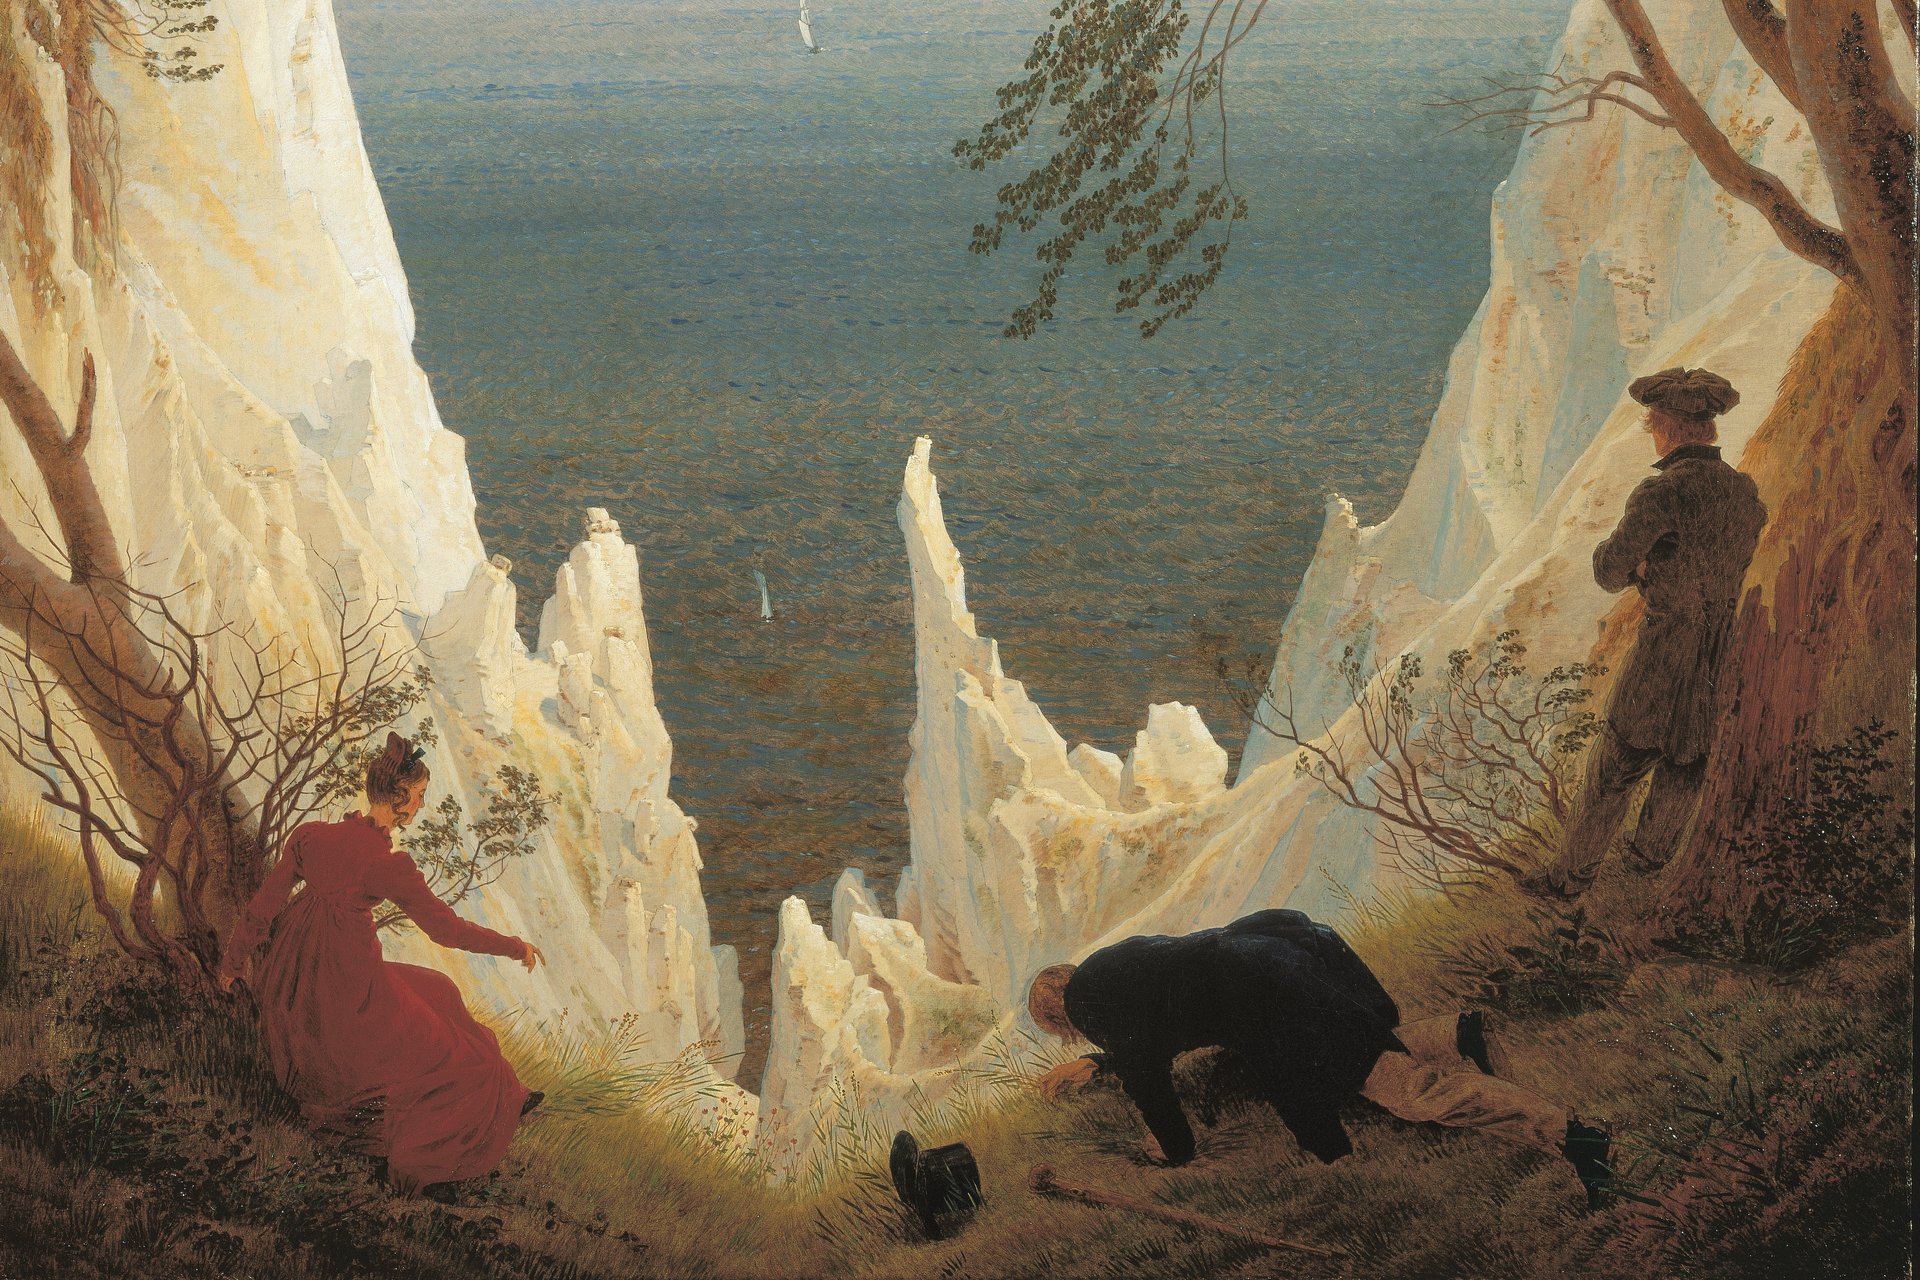 Gemälde mit drei Figuren im Vordergrund, eine Frau im roten Kleid und zwei Männer, einer davon stehend, einer knieend. Dahinter steil aufragende Kreidefelsen vor See-Hintergrund.